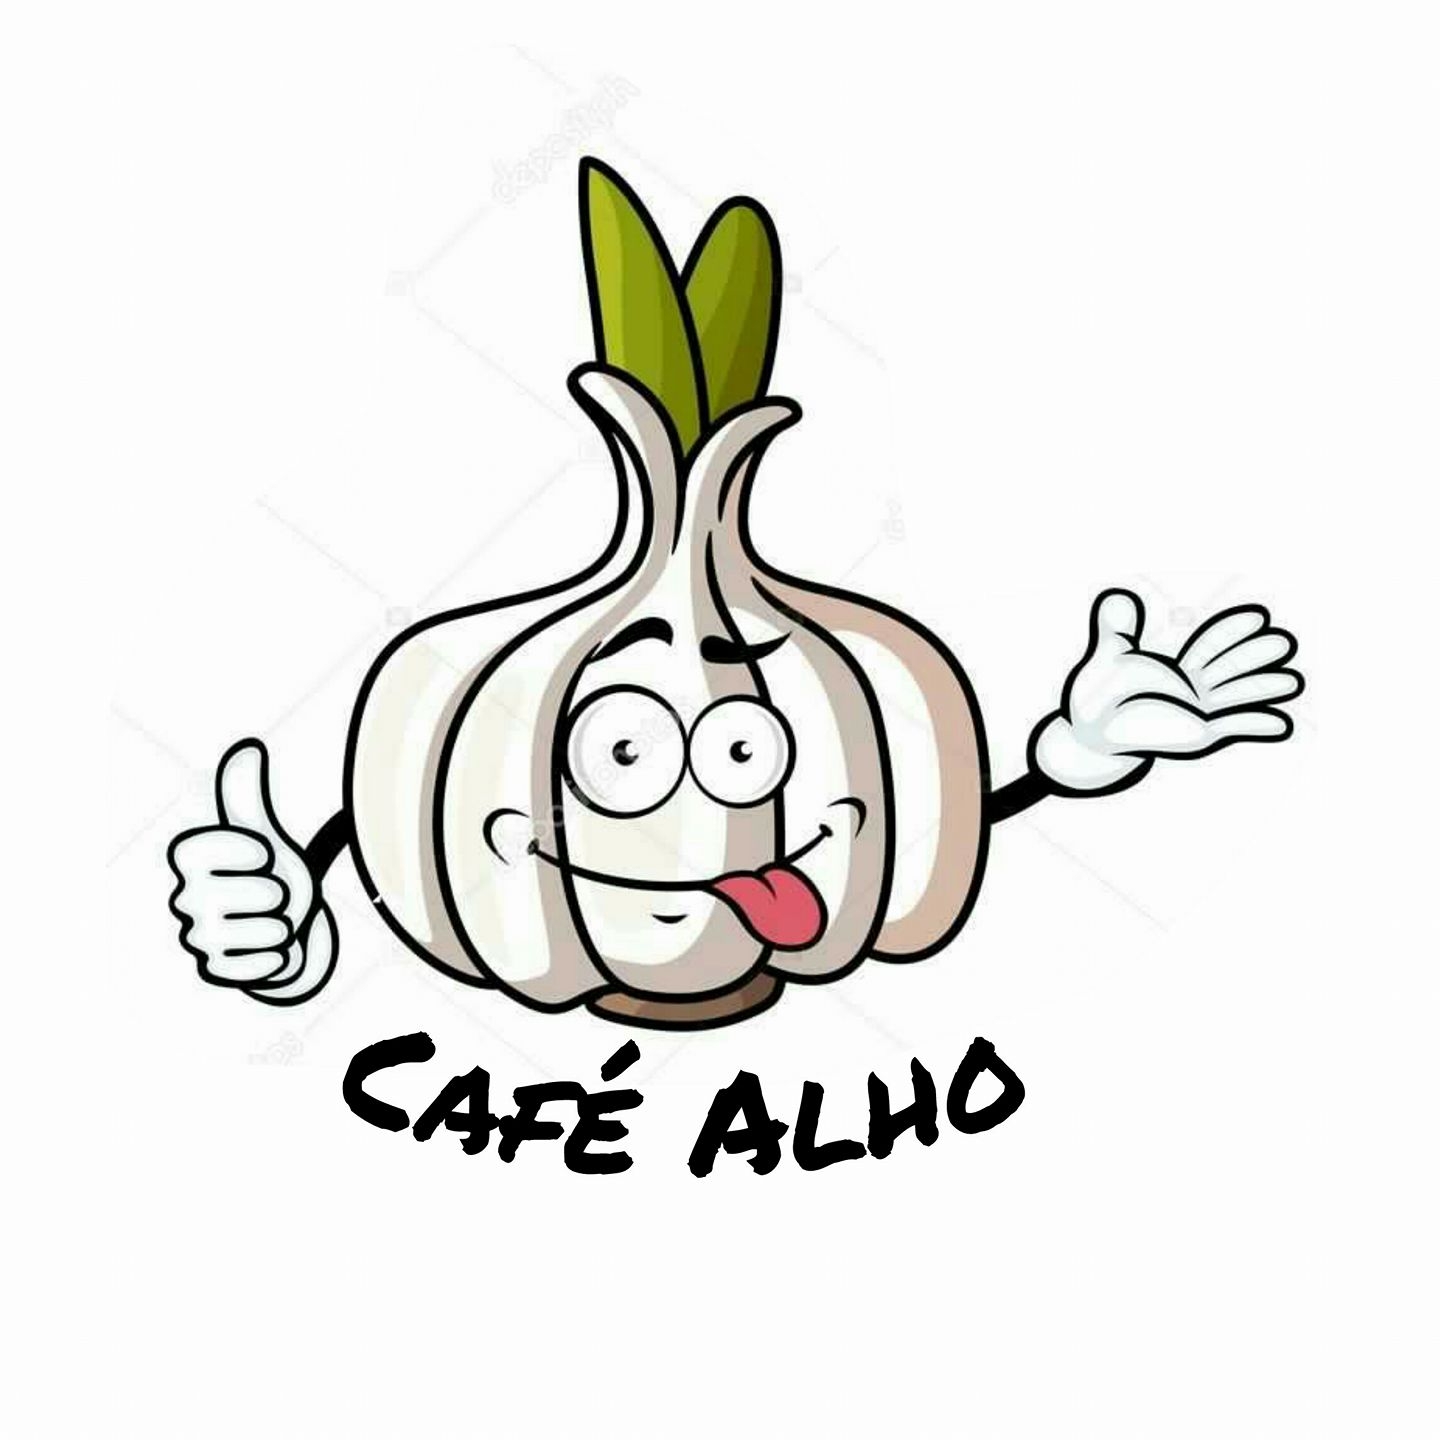 Café Alho